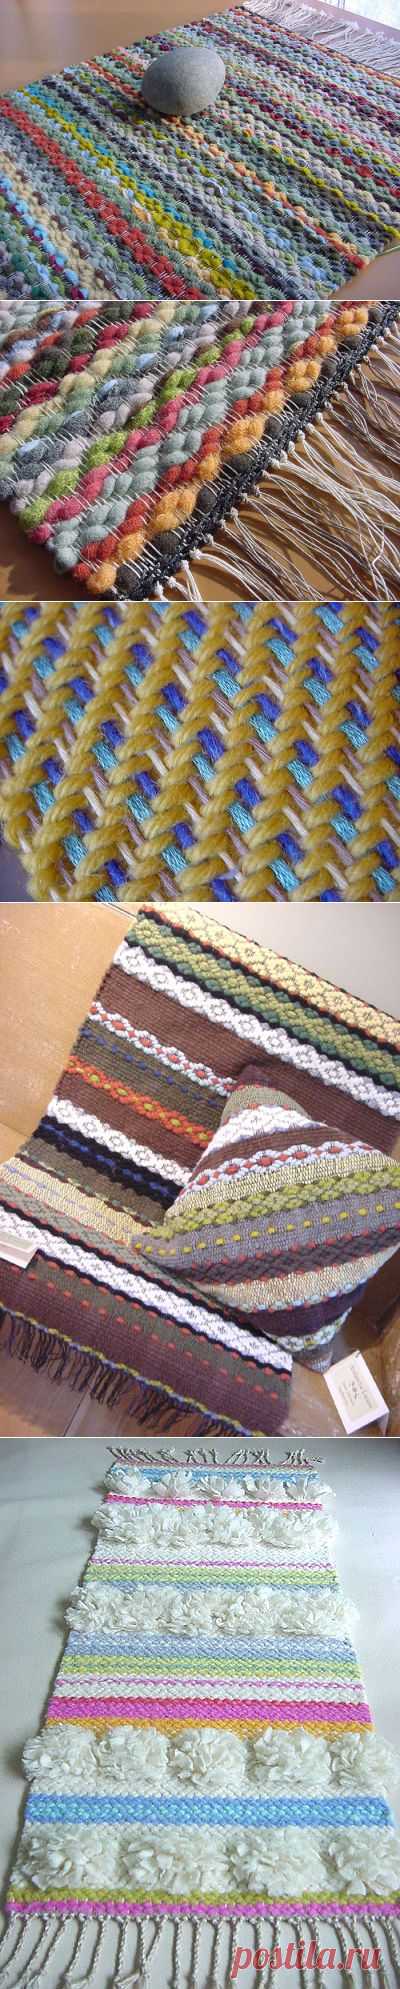 Как сделать ткацкий станок из вилки и картонки | Своими руками